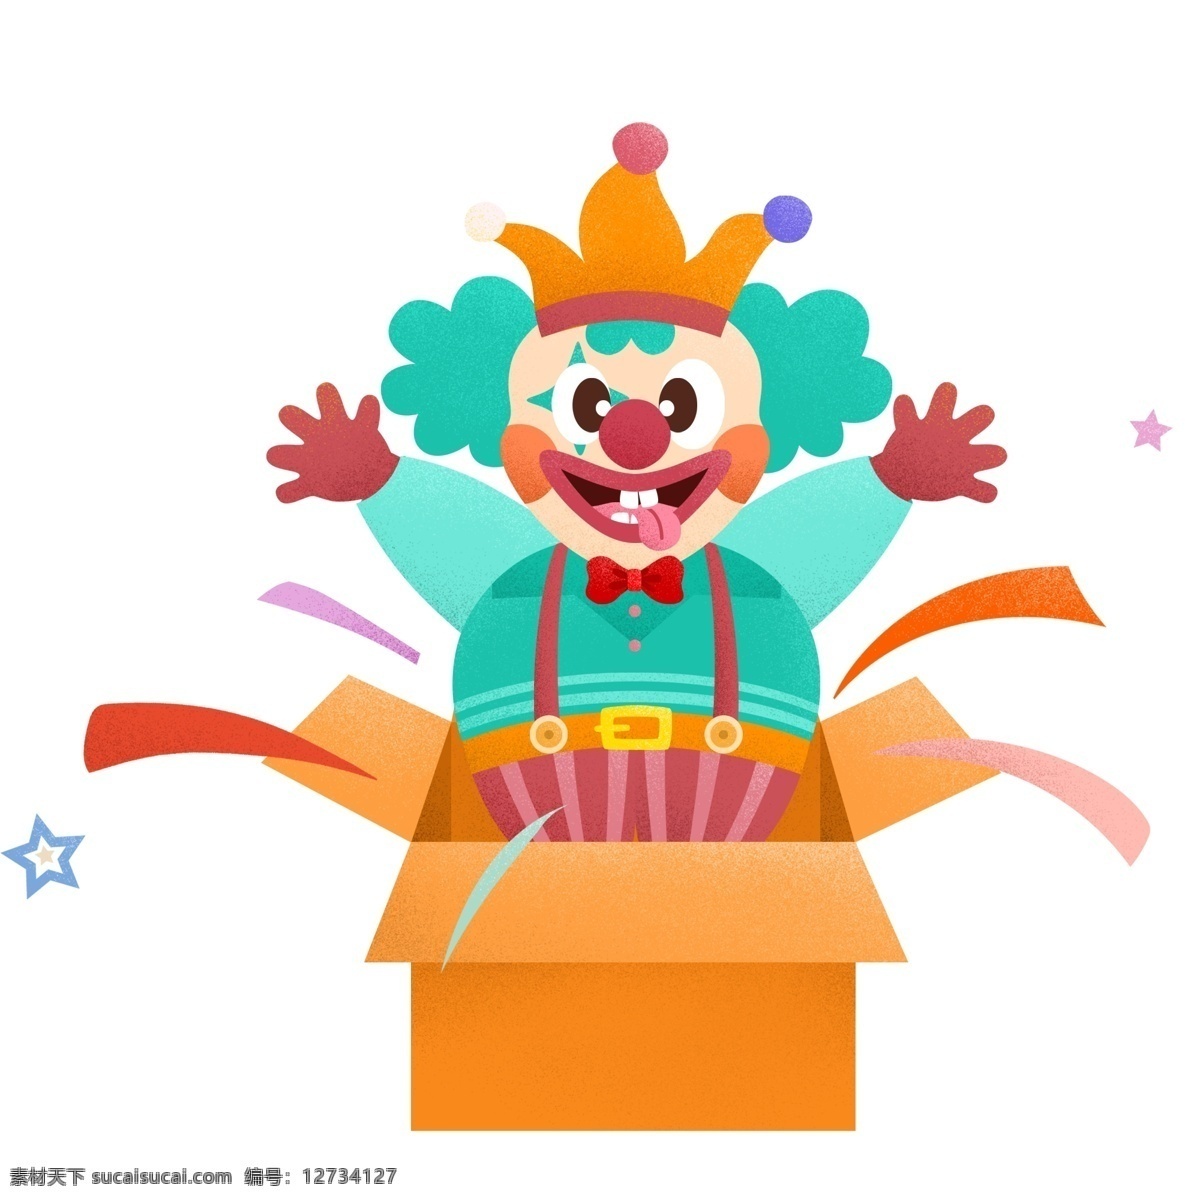 一个 纸箱 蹦 出 小丑 礼品盒 节日礼物 新年礼物 庆祝 节日 庆典 惊喜 彩带 举手 有趣玩耍 快乐氛围